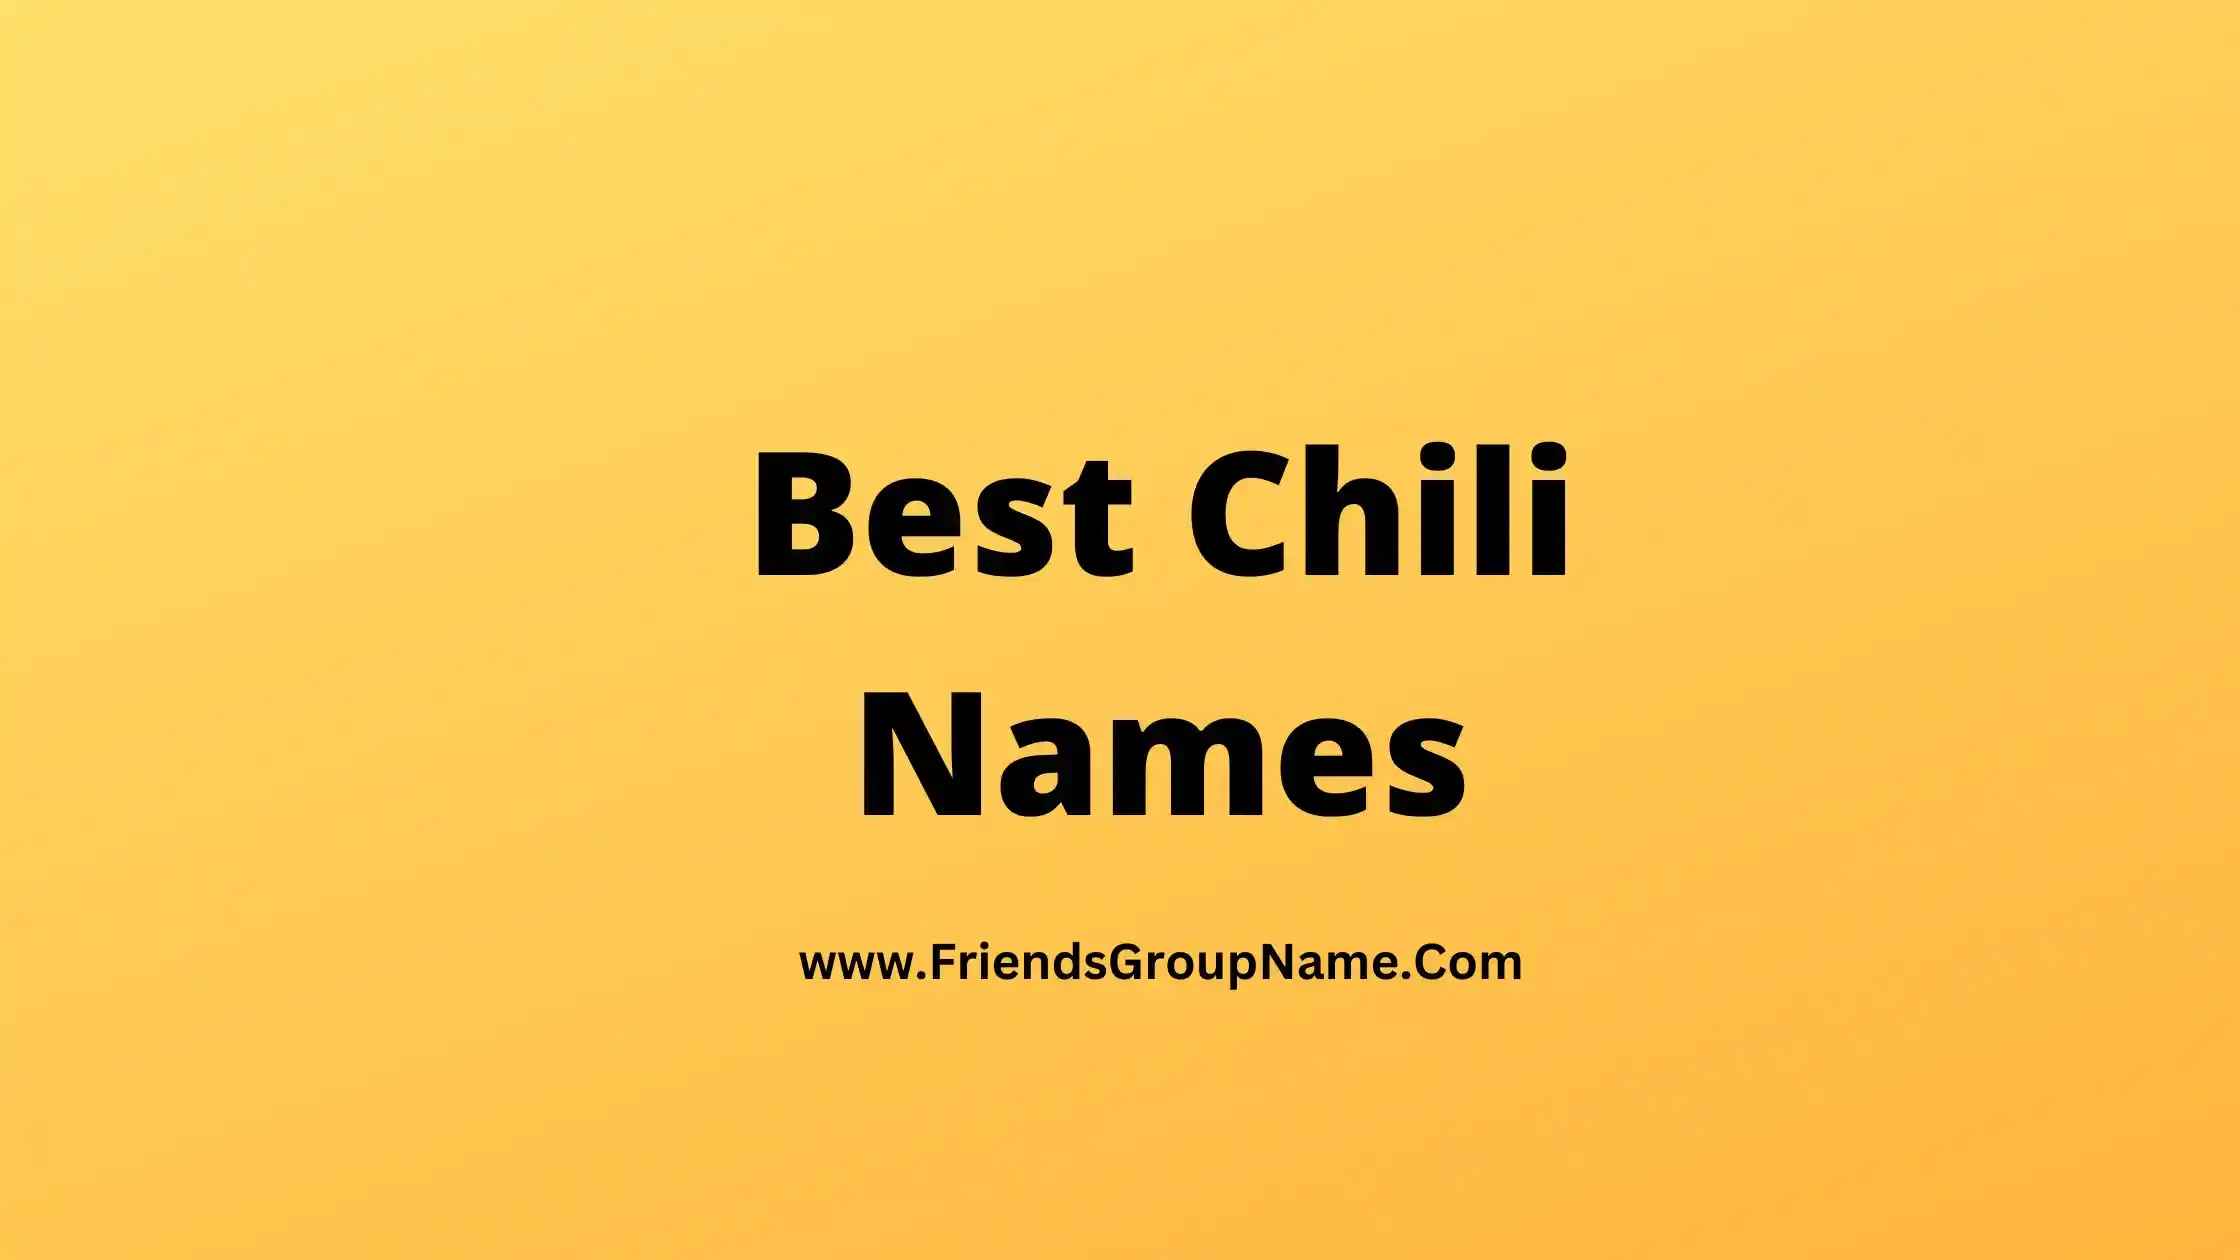 Best Chili Names